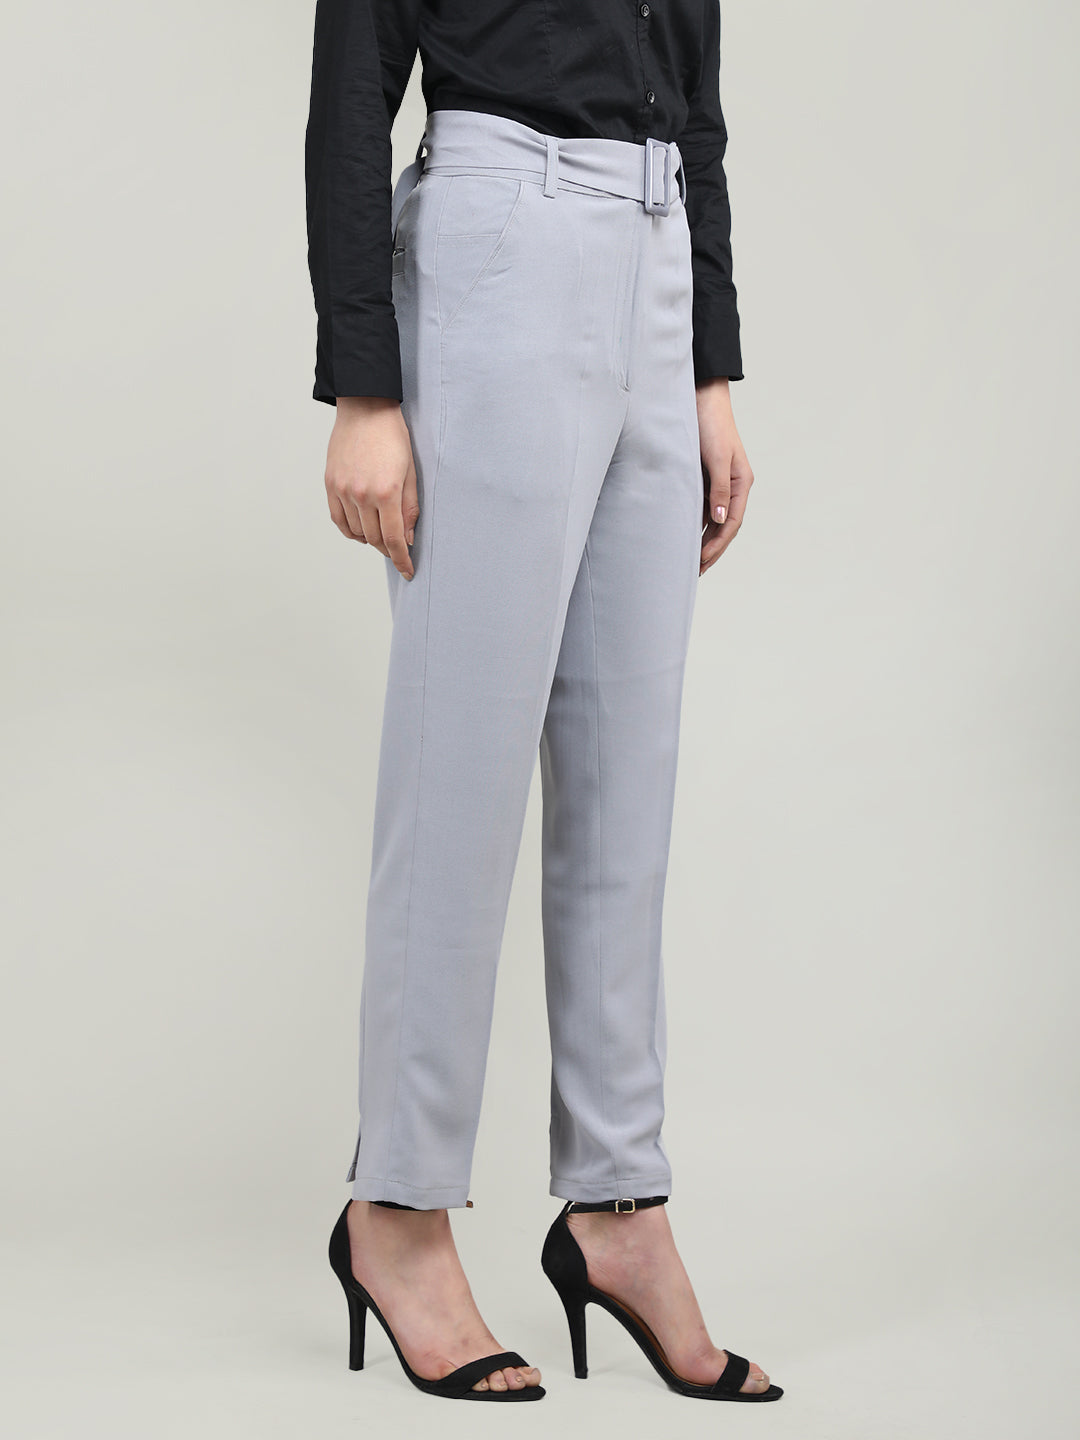 Smarty Pants women's cotton lycra ankle length blue color formal trouser